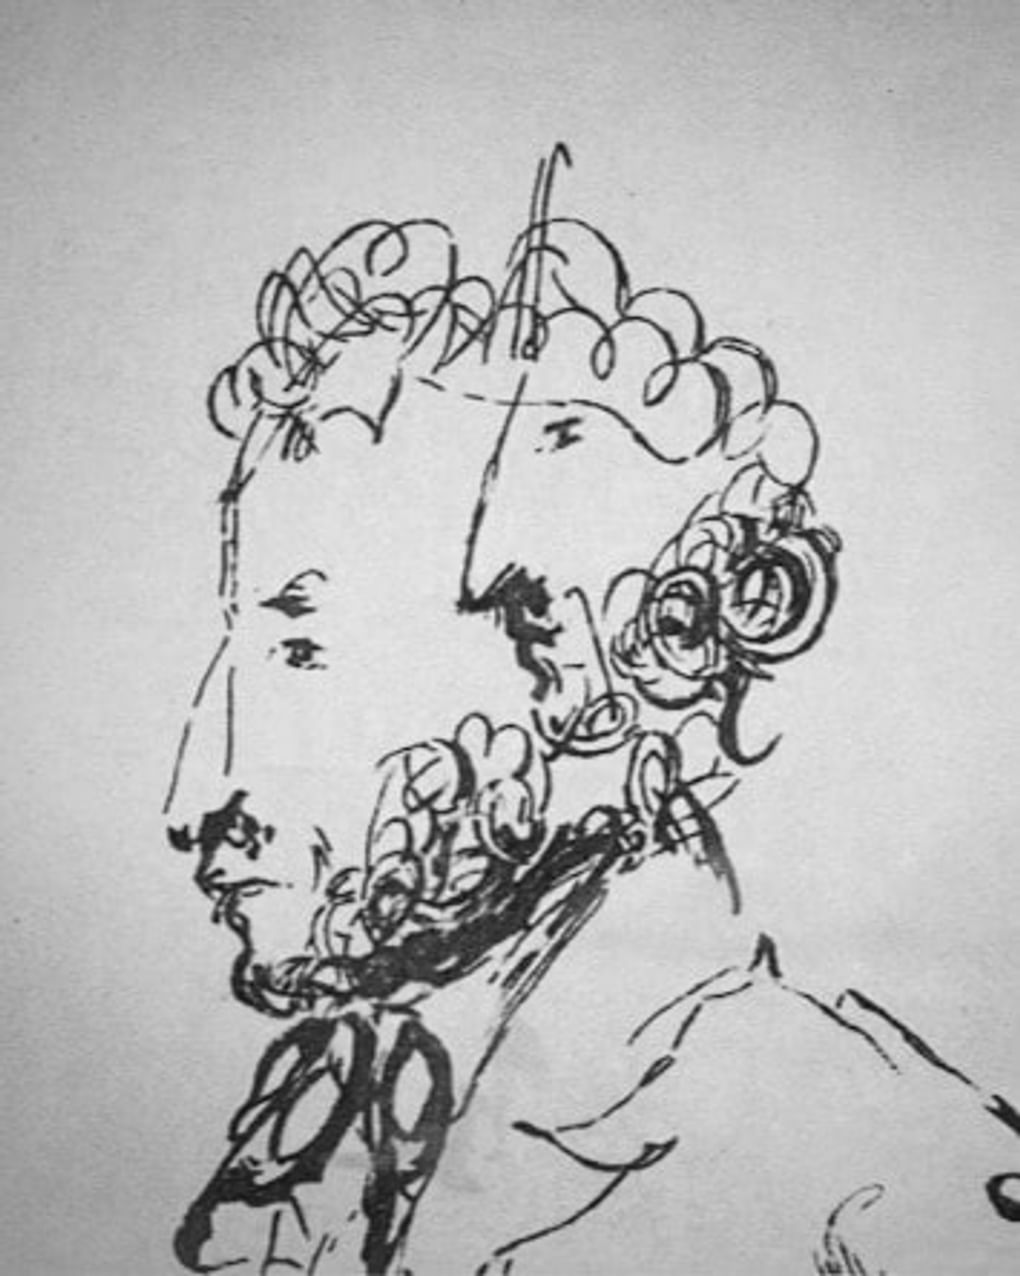 Николай Гоголь. Портрет поэта Александра Пушкина. 1830-е. Изображение: artchive.ru